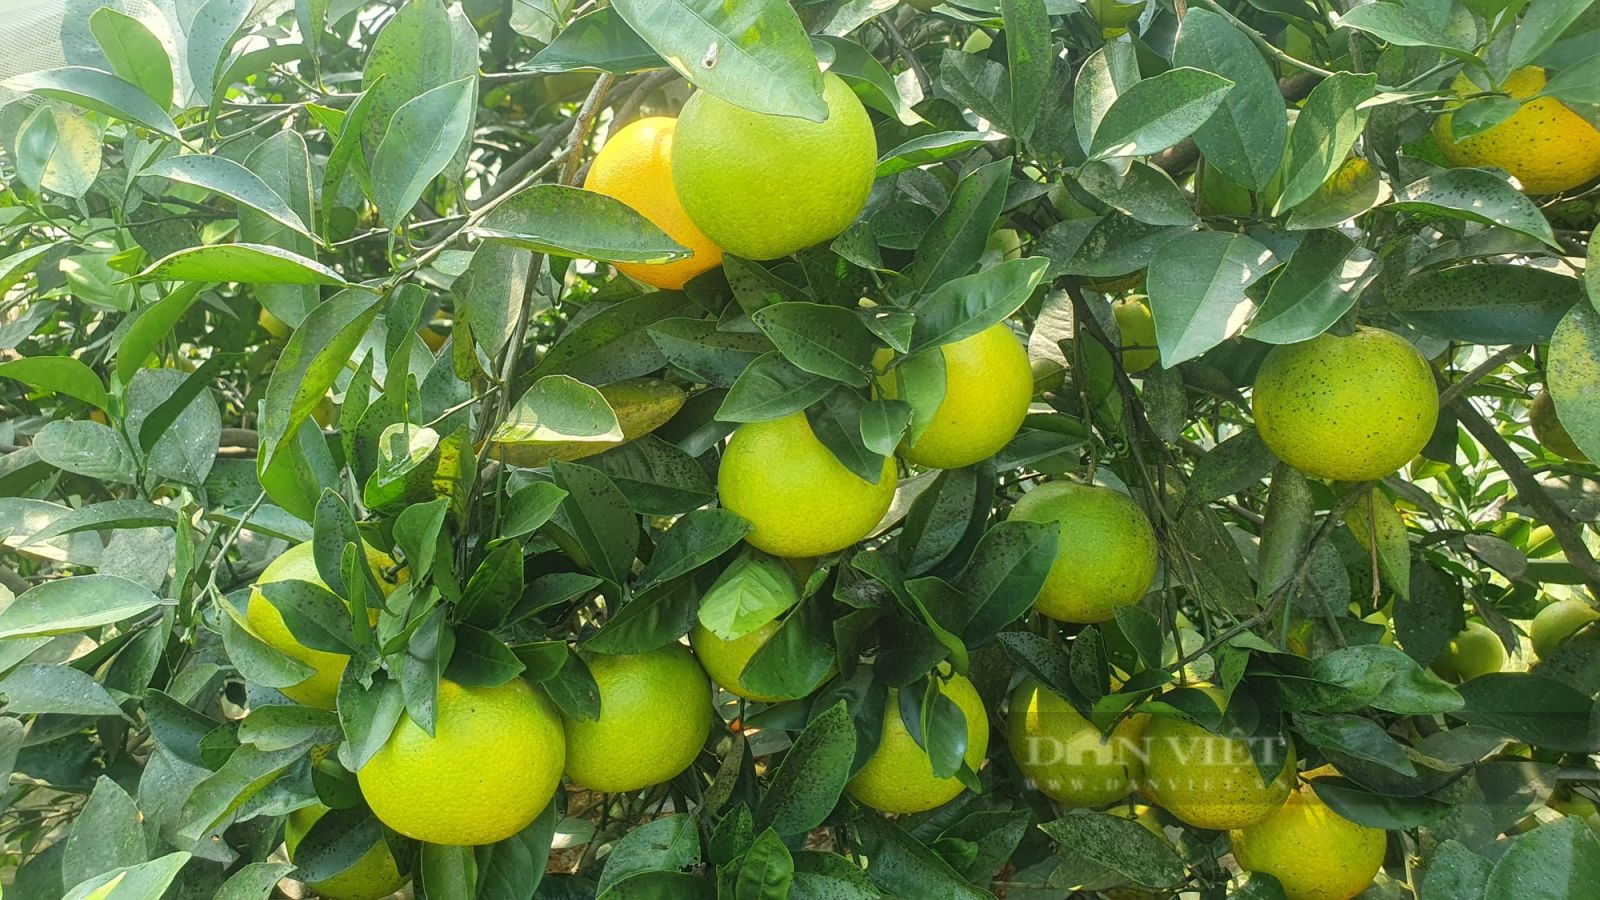 Vườn cam “mắc màn” trĩu quả của nông dân Hà Tĩnh, chưa hô bán, thương lái đặt cọc quả còn trên cây - Ảnh 7.